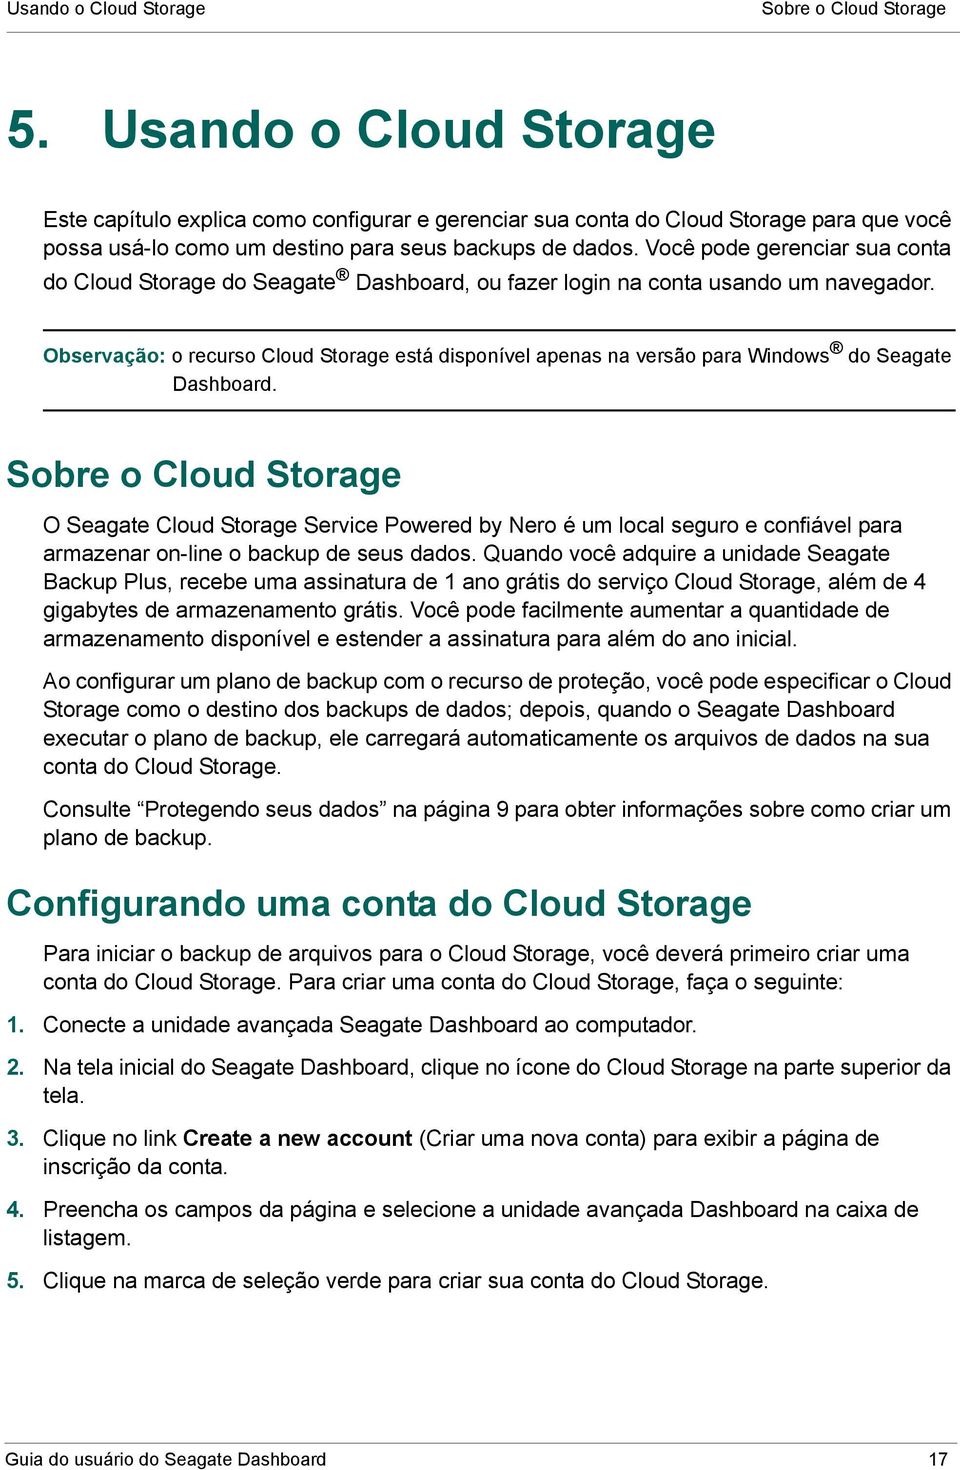 Você pode gerenciar sua conta do Cloud Storage do Seagate Dashboard, ou fazer login na conta usando um navegador.